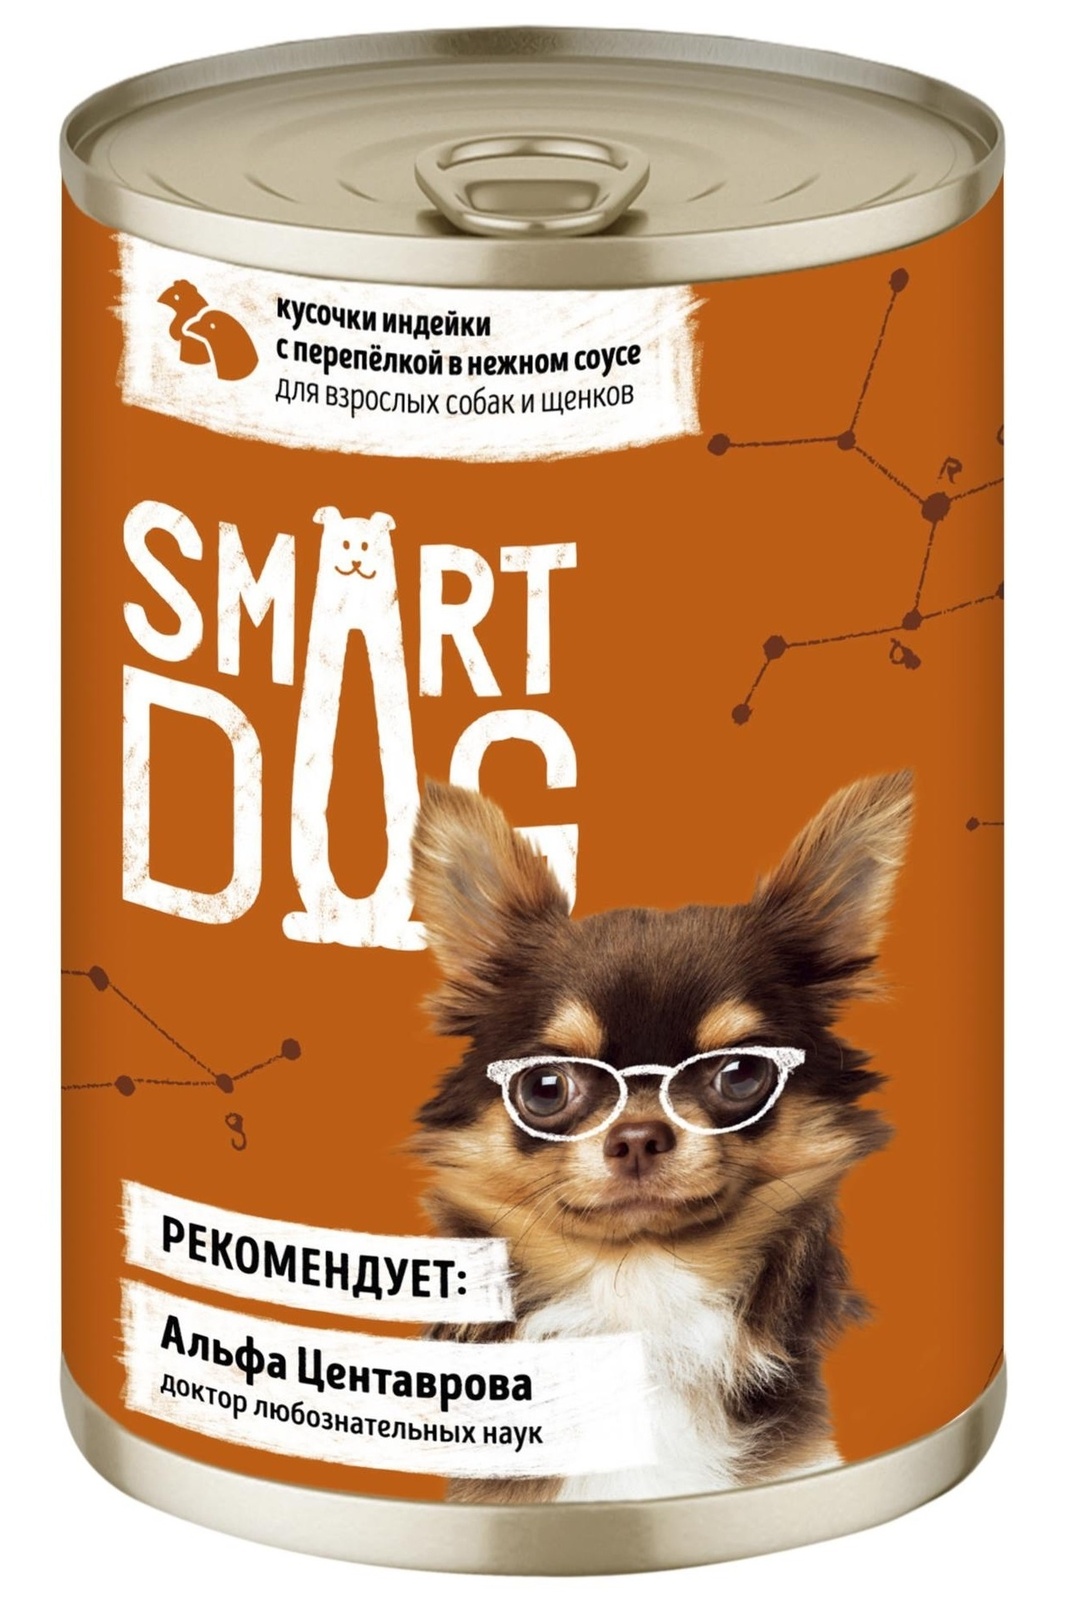 Smart Dog консервы Smart Dog консервы консервы для взрослых собак и щенков кусочки индейки с перепелкой в нежном соусе (400 г)